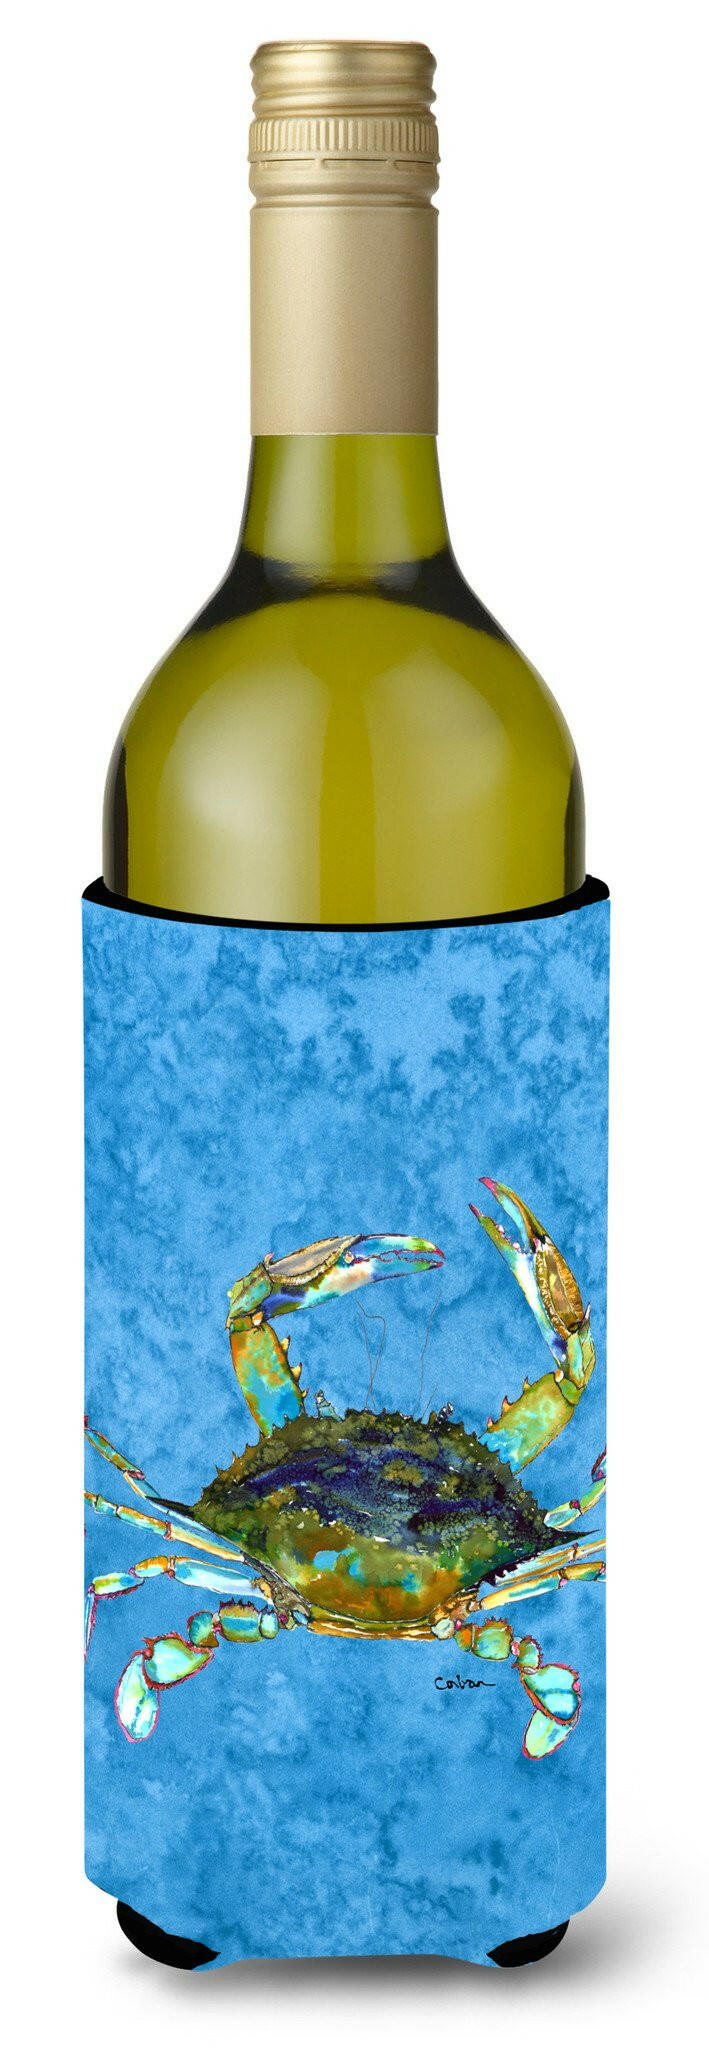 Blue Crab on Blue Wine Bottle Beverage Insulator Beverage Insulator Hugger by Caroline's Treasures